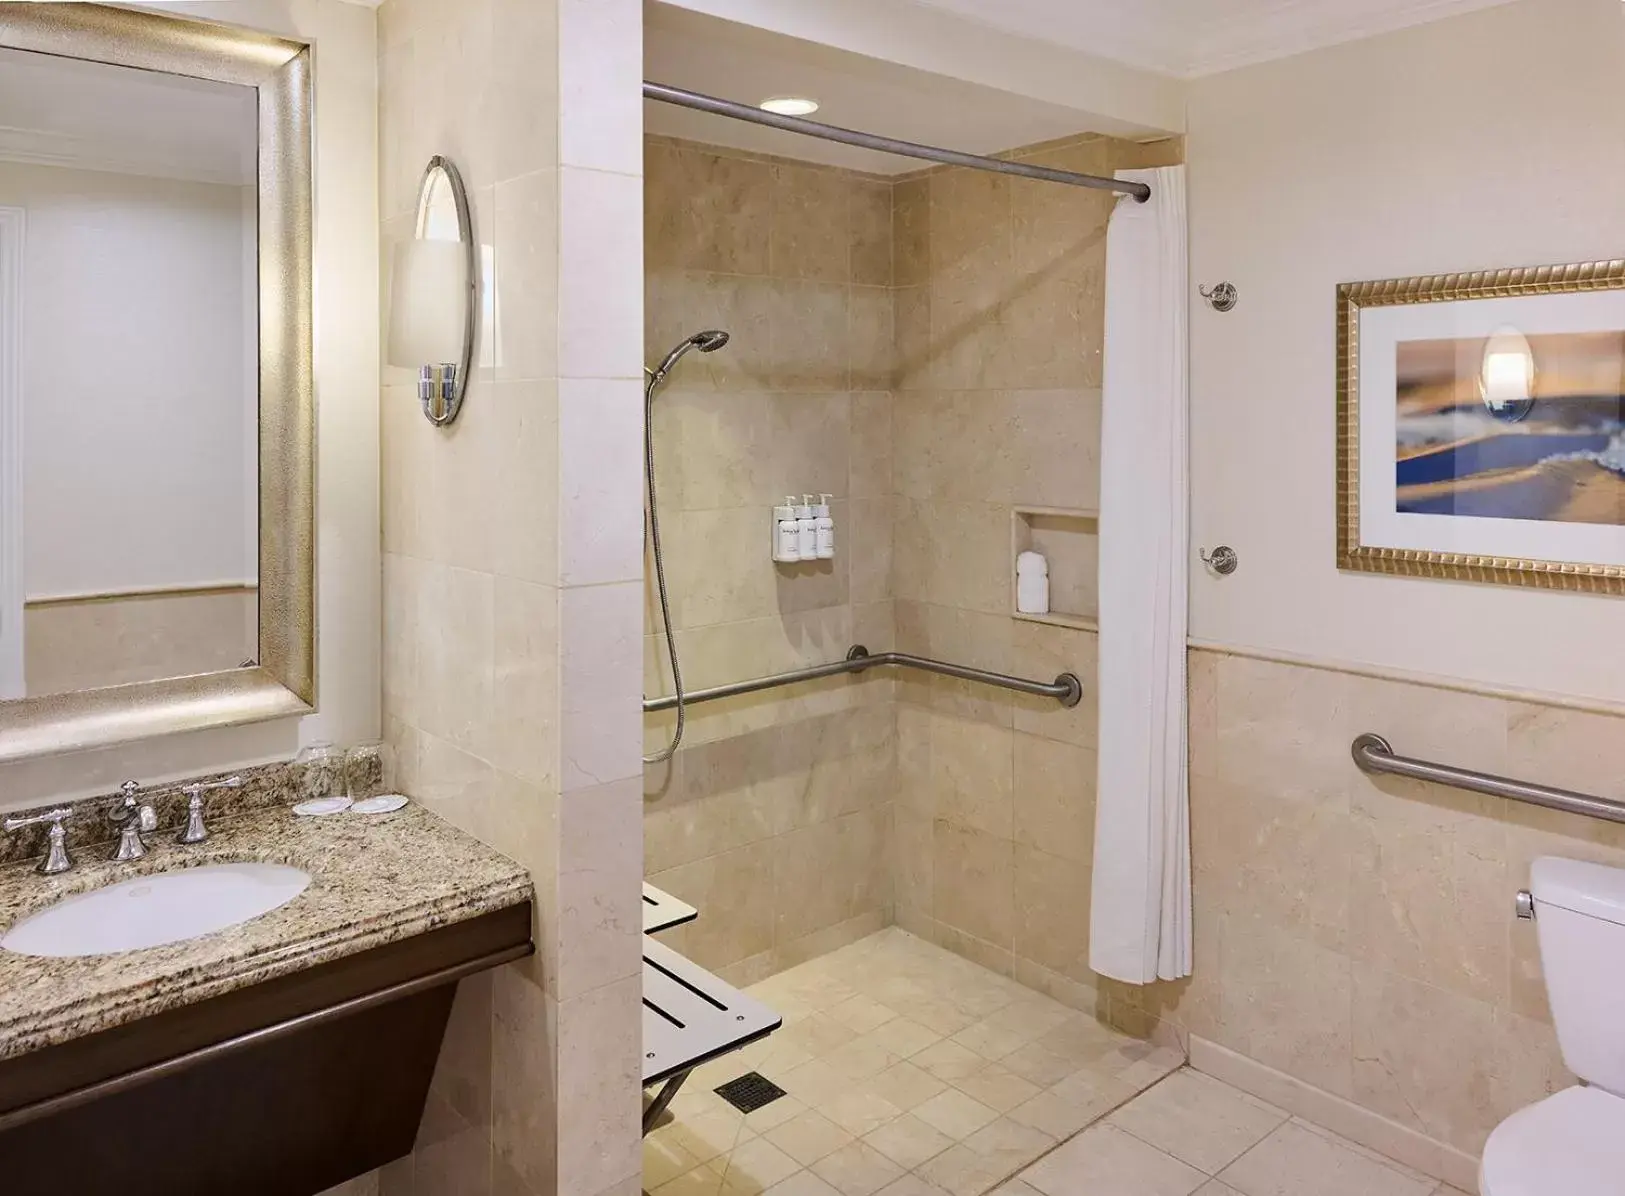 Bathroom in Balboa Bay Resort